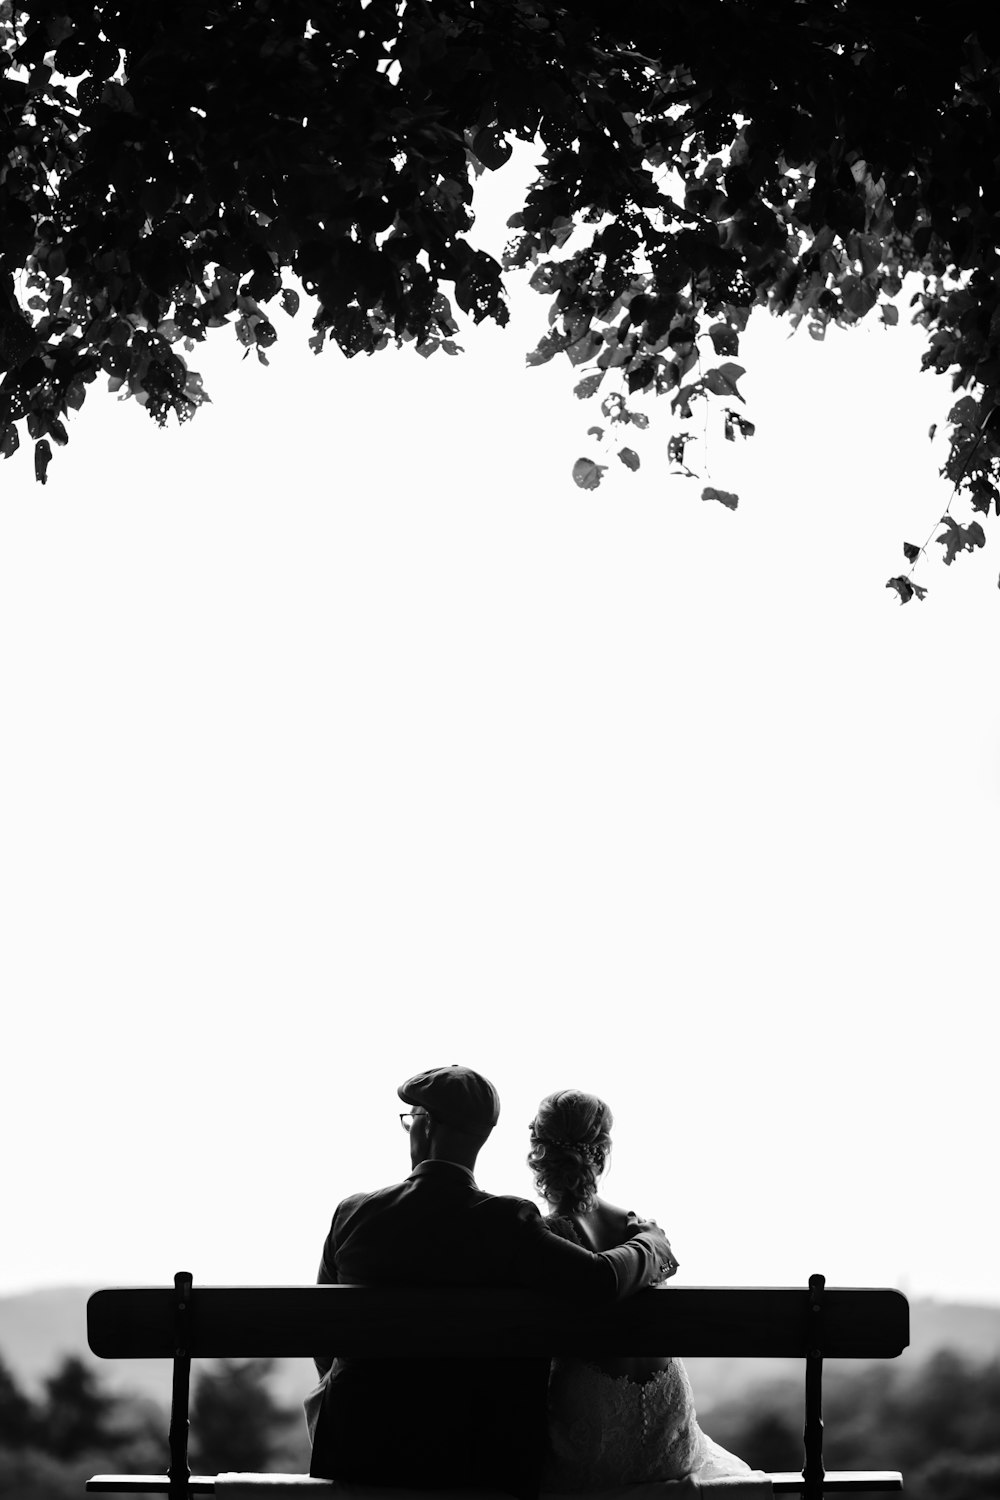 Coppia seduta sulla panchina sotto la fotografia in scala di grigi dell'albero